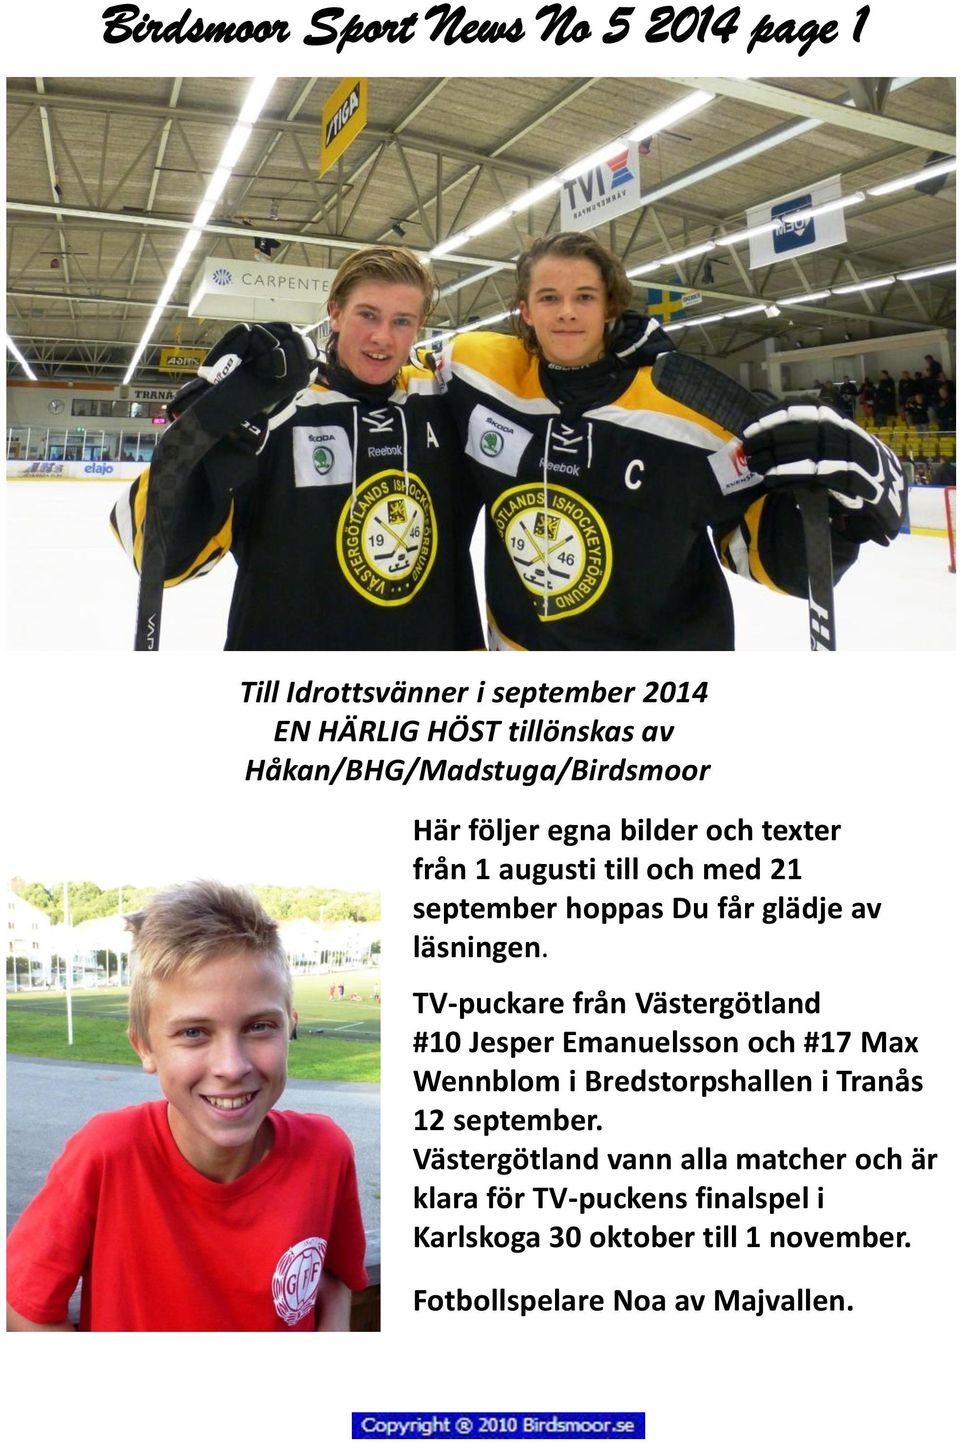 läsningen. TV-puckare från Västergötland #10 Jesper Emanuelsson och #17 Max Wennblom i Bredstorpshallen i Tranås 12 september.